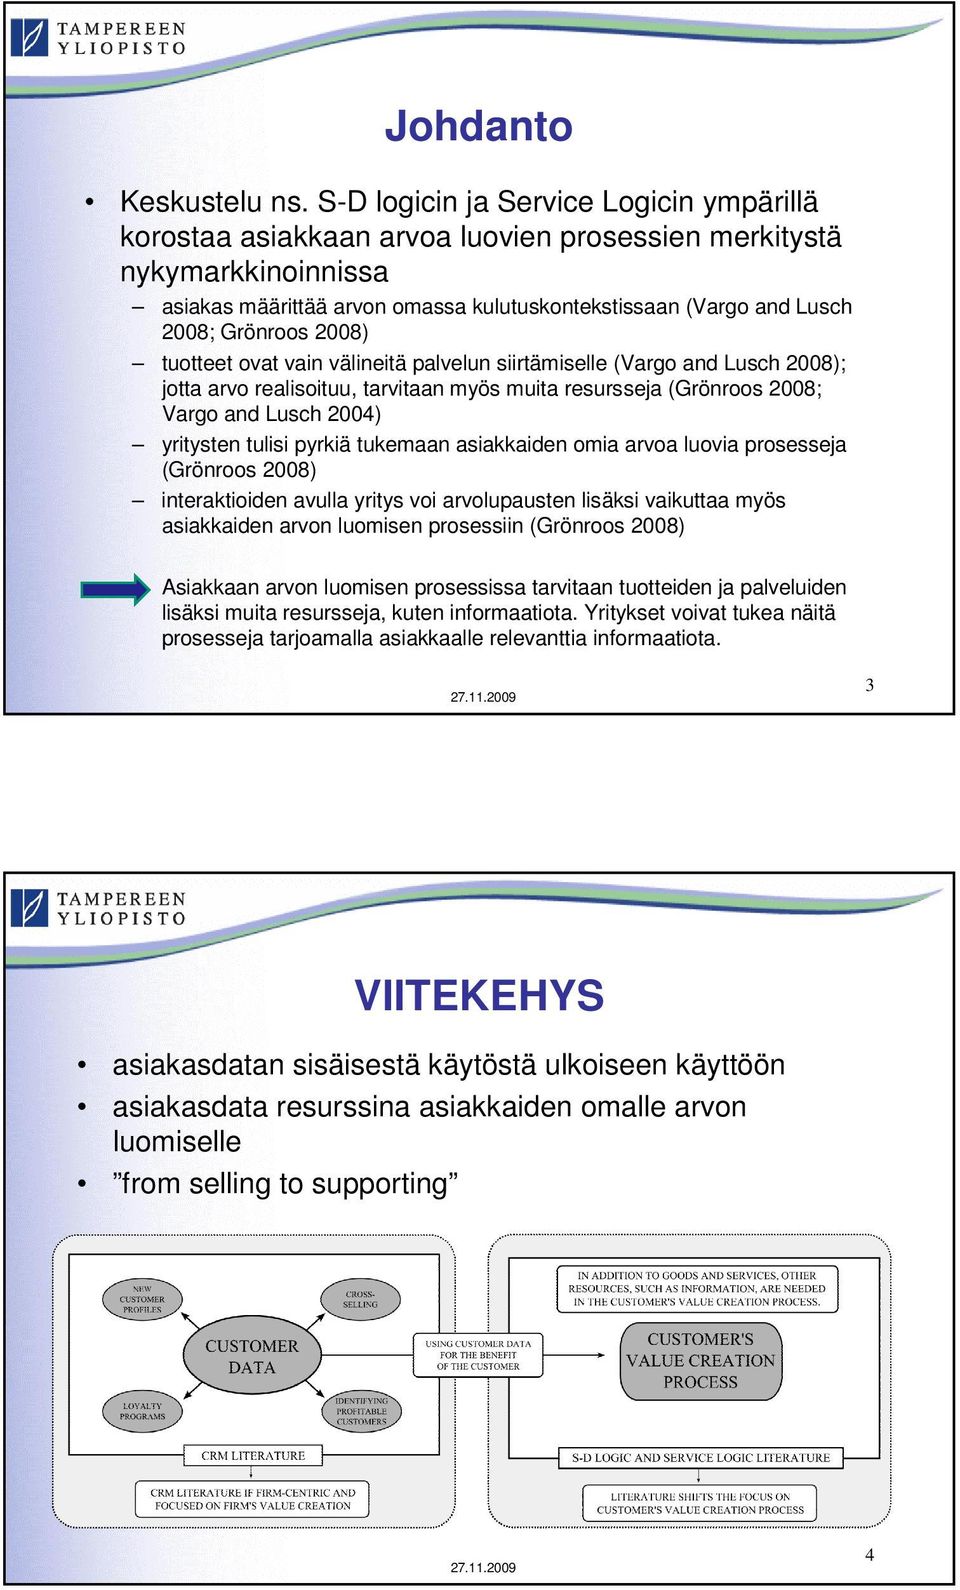 Grönroos 2008) tuotteet ovat vain välineitä palvelun siirtämiselle (Vargo and Lusch 2008); jotta arvo realisoituu, tarvitaan myös muita resursseja (Grönroos 2008; Vargo and Lusch 2004) yritysten